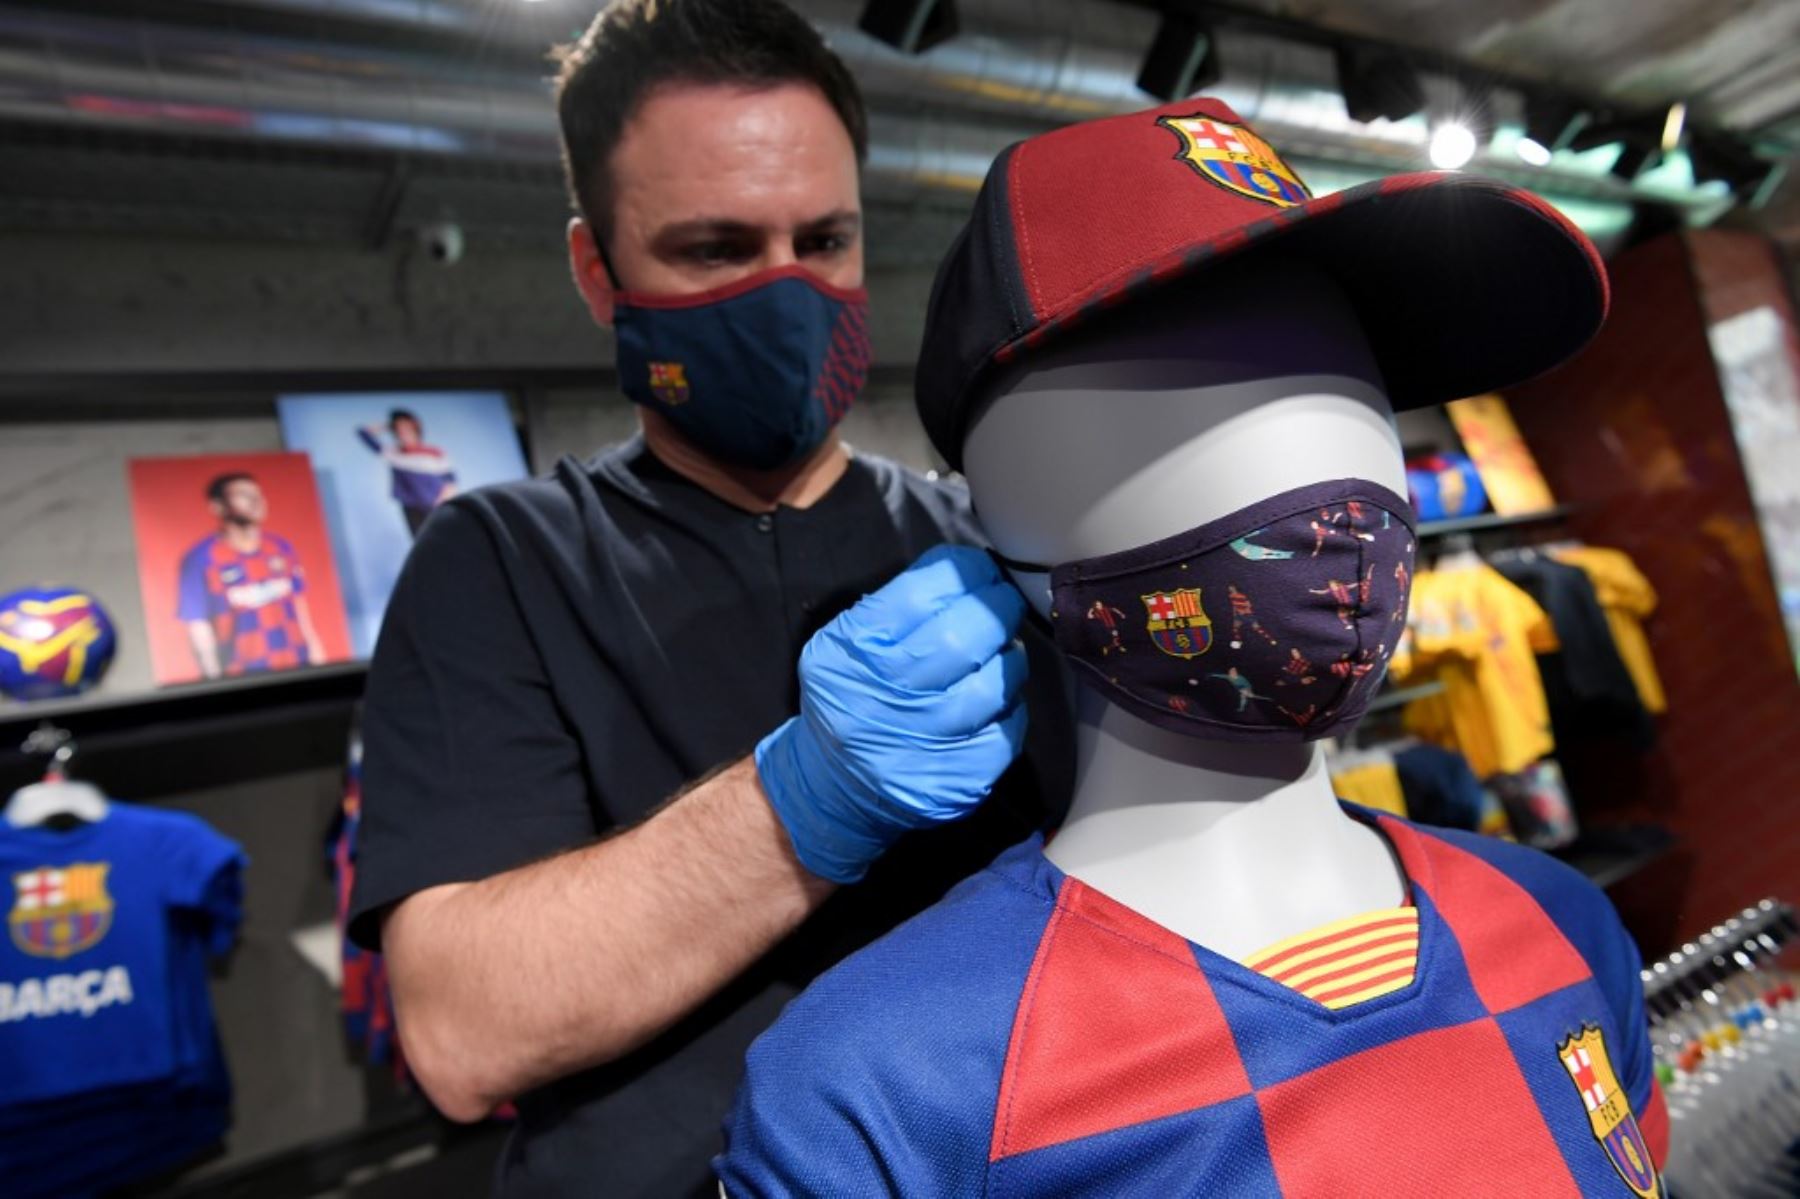 España ingresa en desconfinamiento total a partir de hoy tras varias semanas en cuarentena por el coronavirus covid-19. Foto: AFP